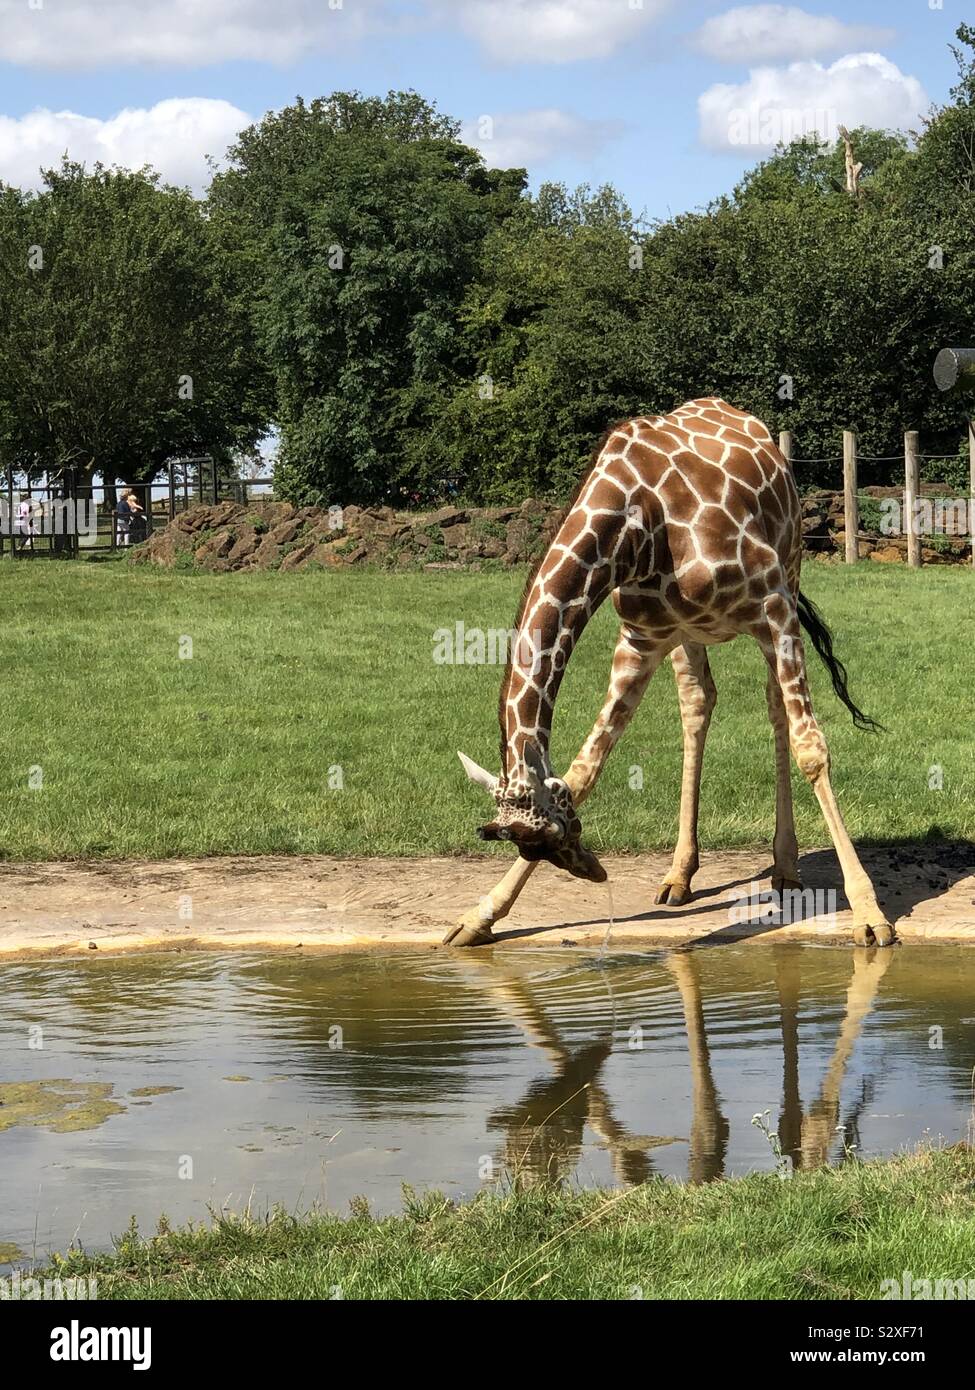 Photo humoristique de girafes de boire à la piscine. Un regard en arrière à travers les jambes. Recrachant de l'eau. Banque D'Images